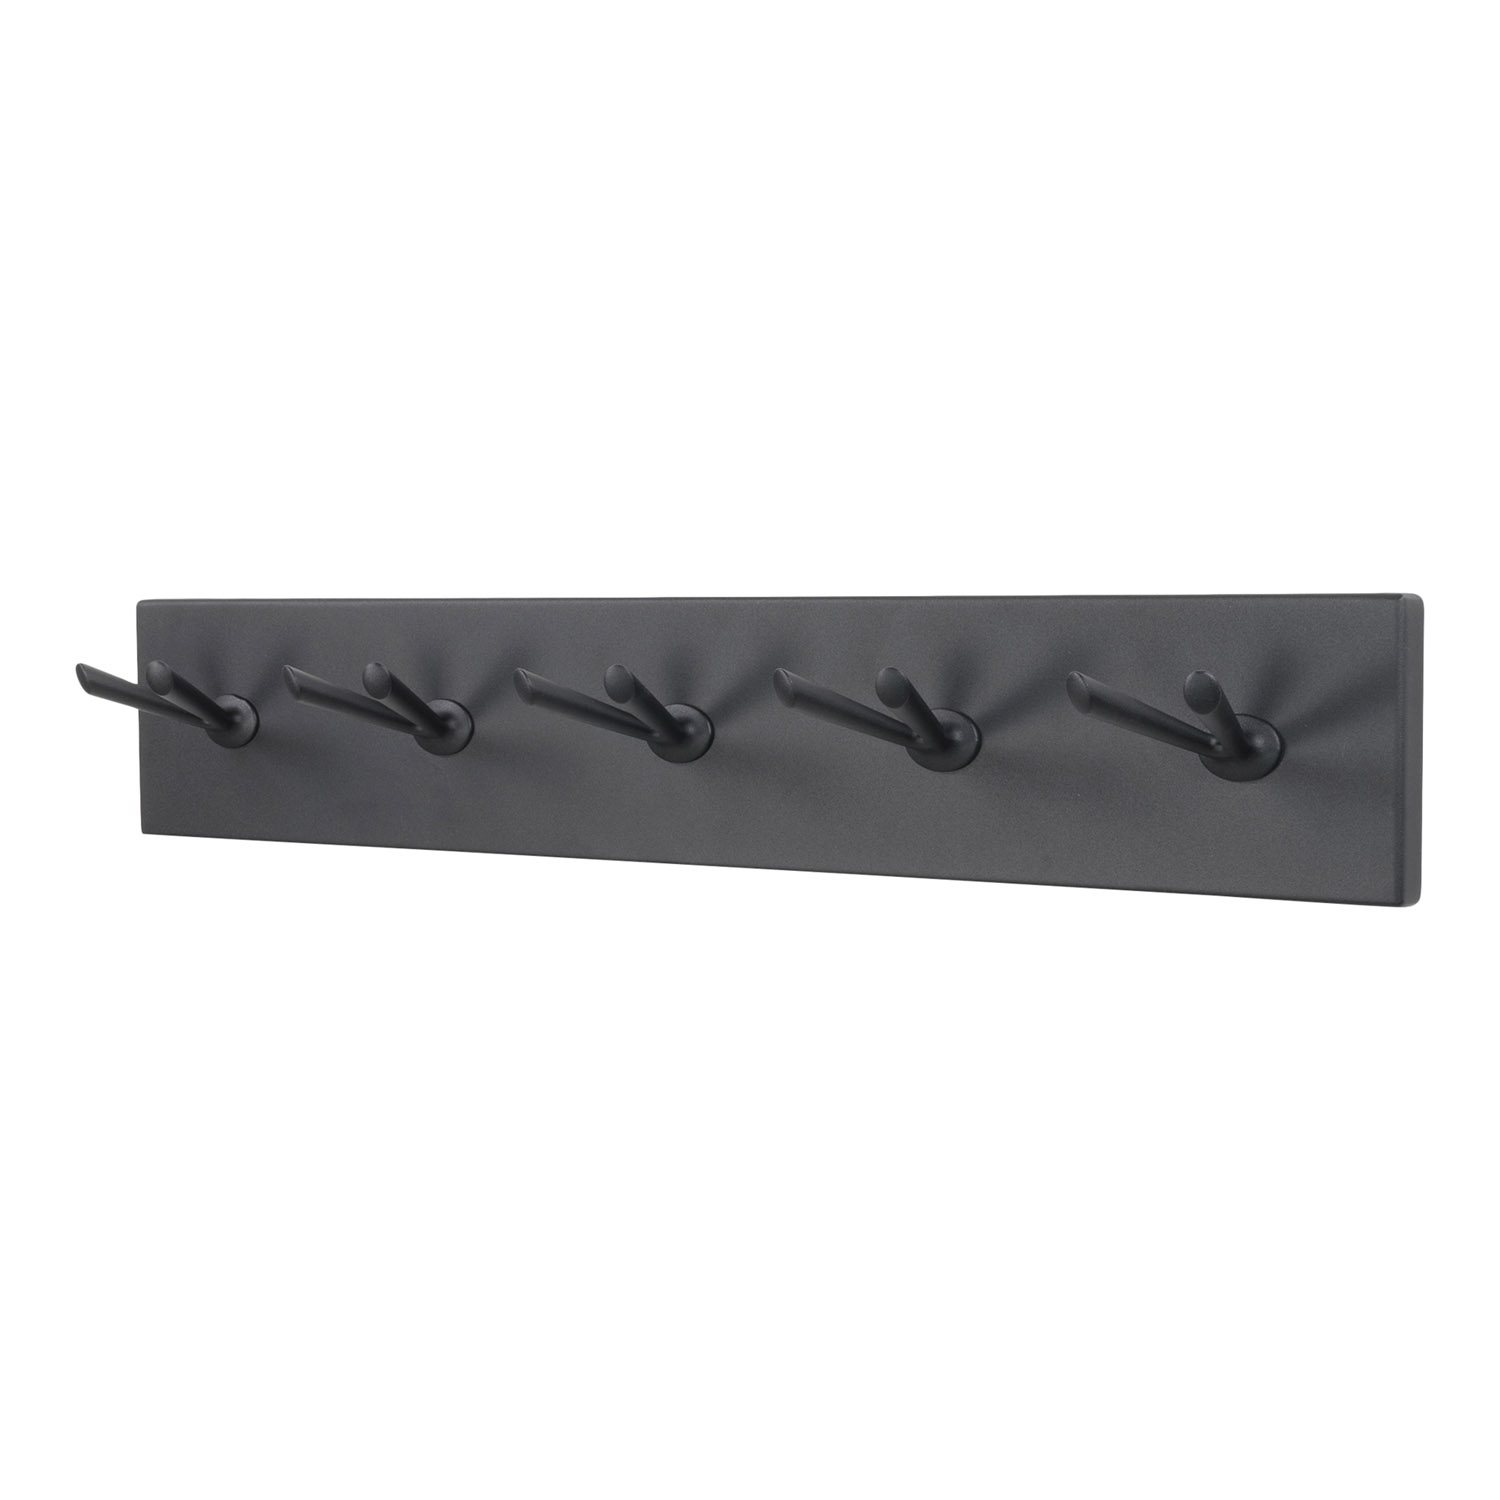 SPINDER DESIGN Pull knagerække, m. 5 dobbelt-kroge - sort stål (74,5x12,5)